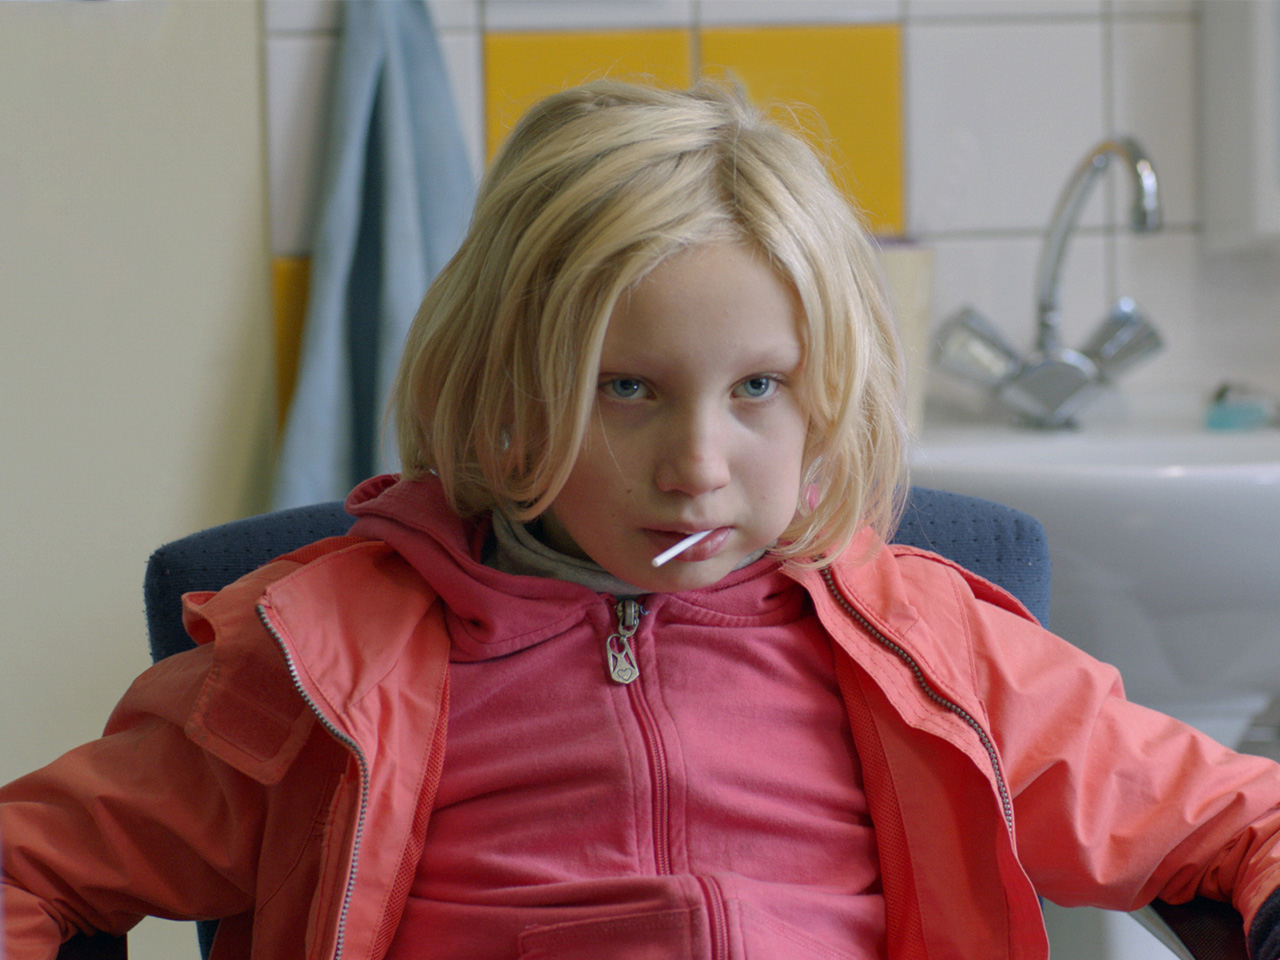 他人を攻撃してしまう9歳の少女を、“社会から排除”するか、見守るか。2つのドイツ映画が描く「不寛容」